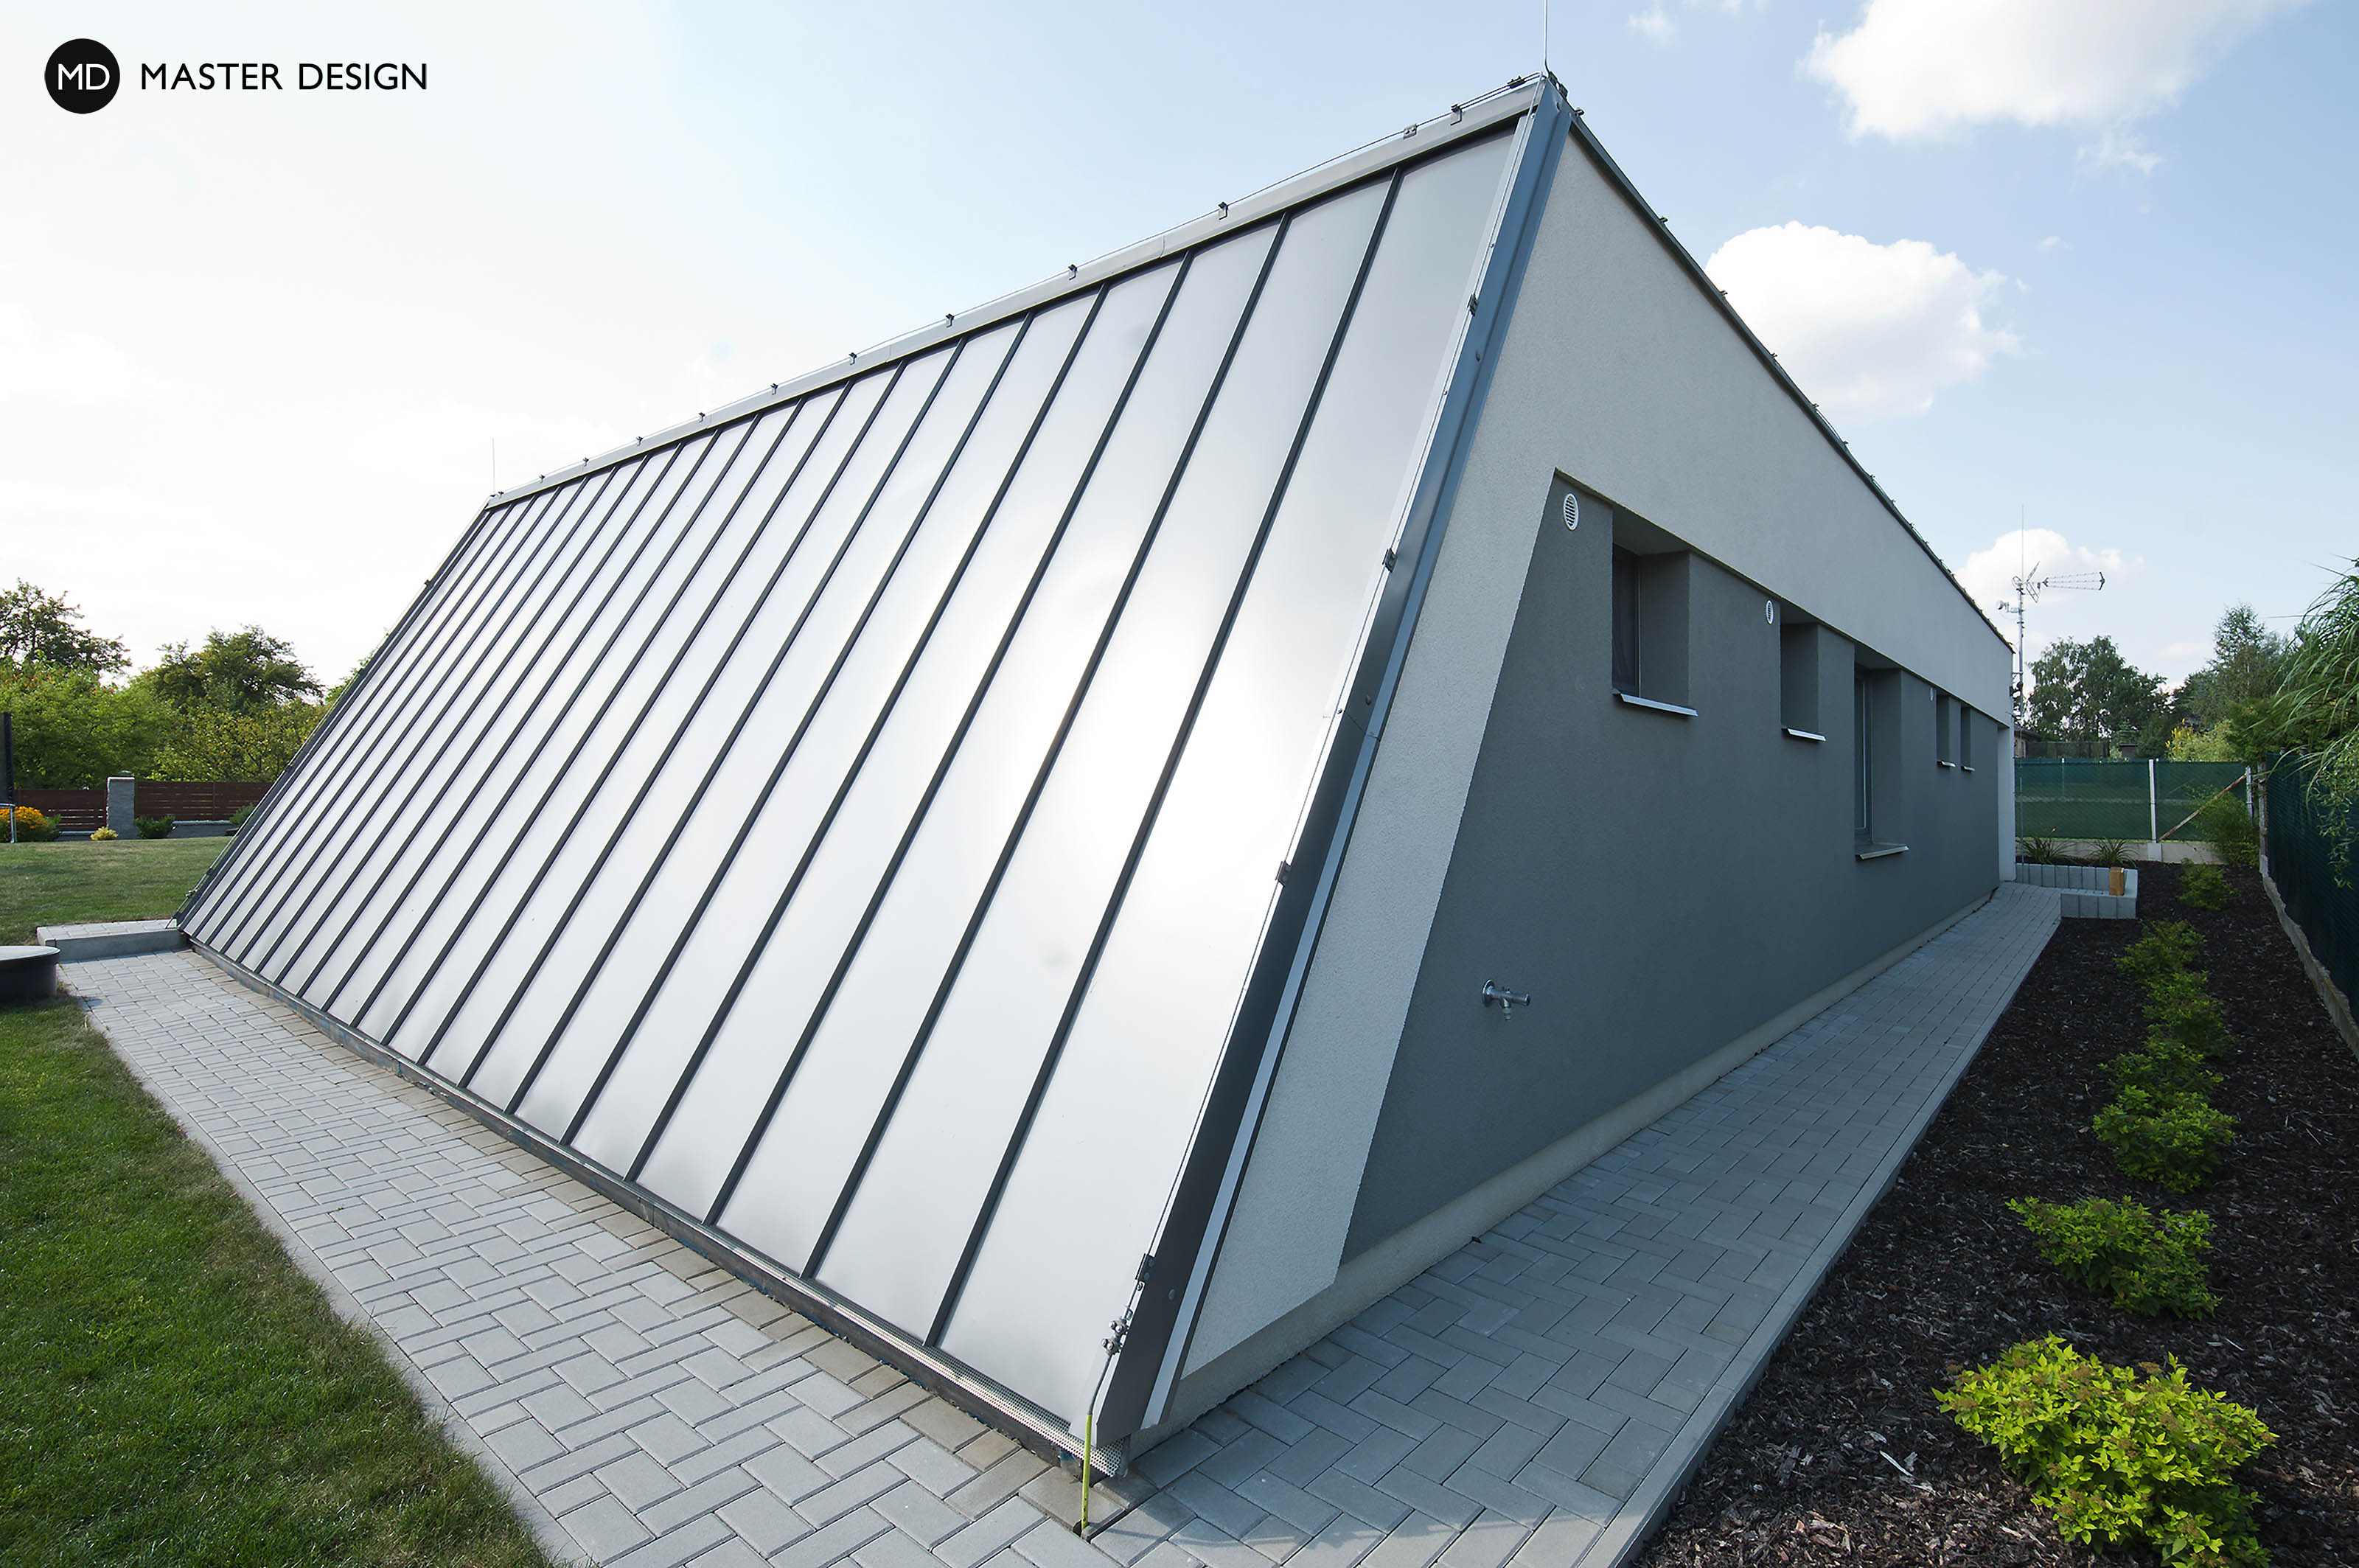 Atypický bungalov do L s plochou střechou, krytým stáním a dřevěným obkladem - Ostrava - Vizualizace 3